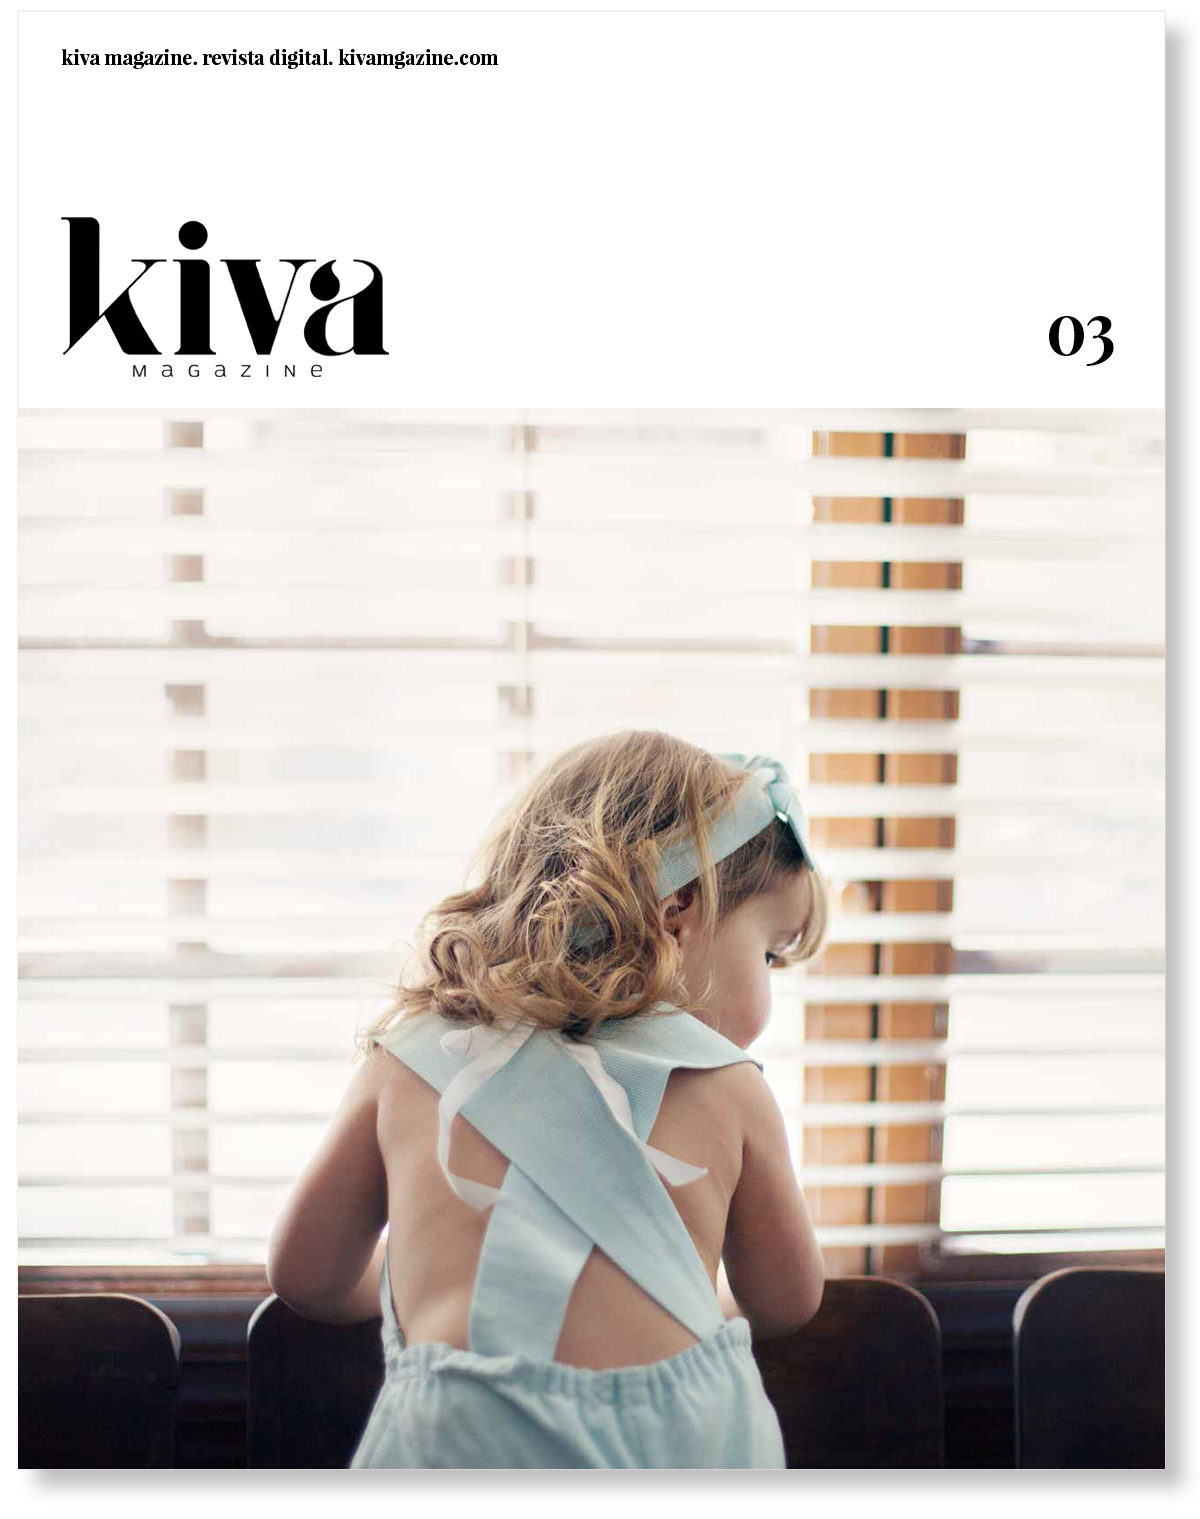 Tercer número Kiva magazine